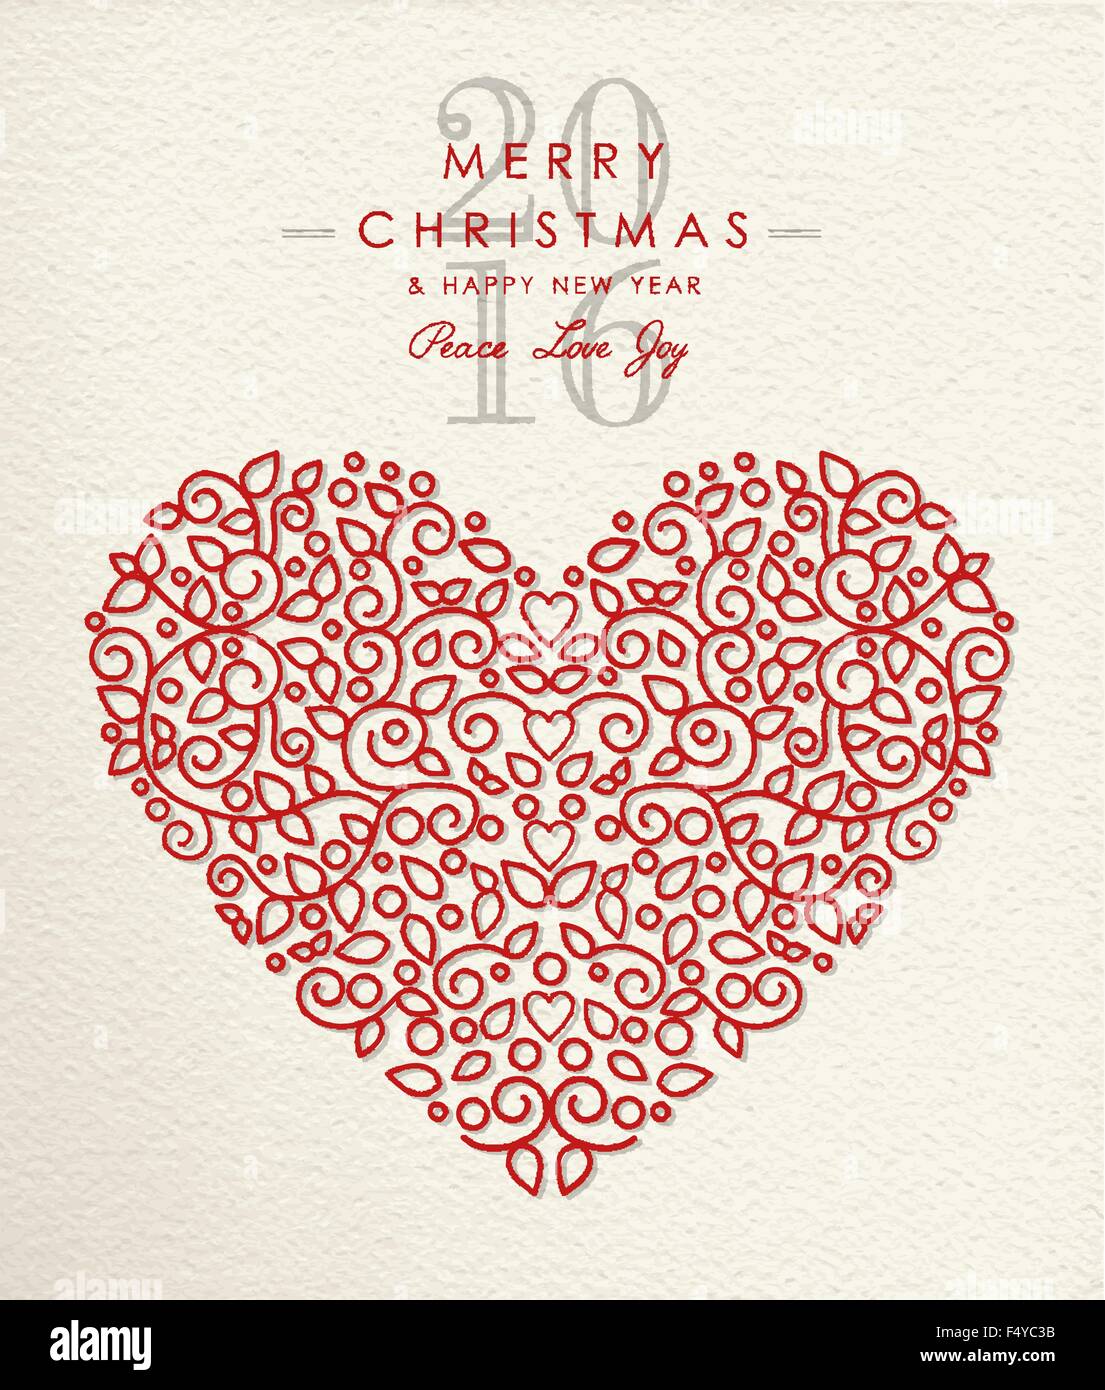 Joyeux Noël et heureuse année 2016 en forme de coeur, maison de style contour ornement love design. Idéal pour les cartes de vœux de noël. Illustration de Vecteur